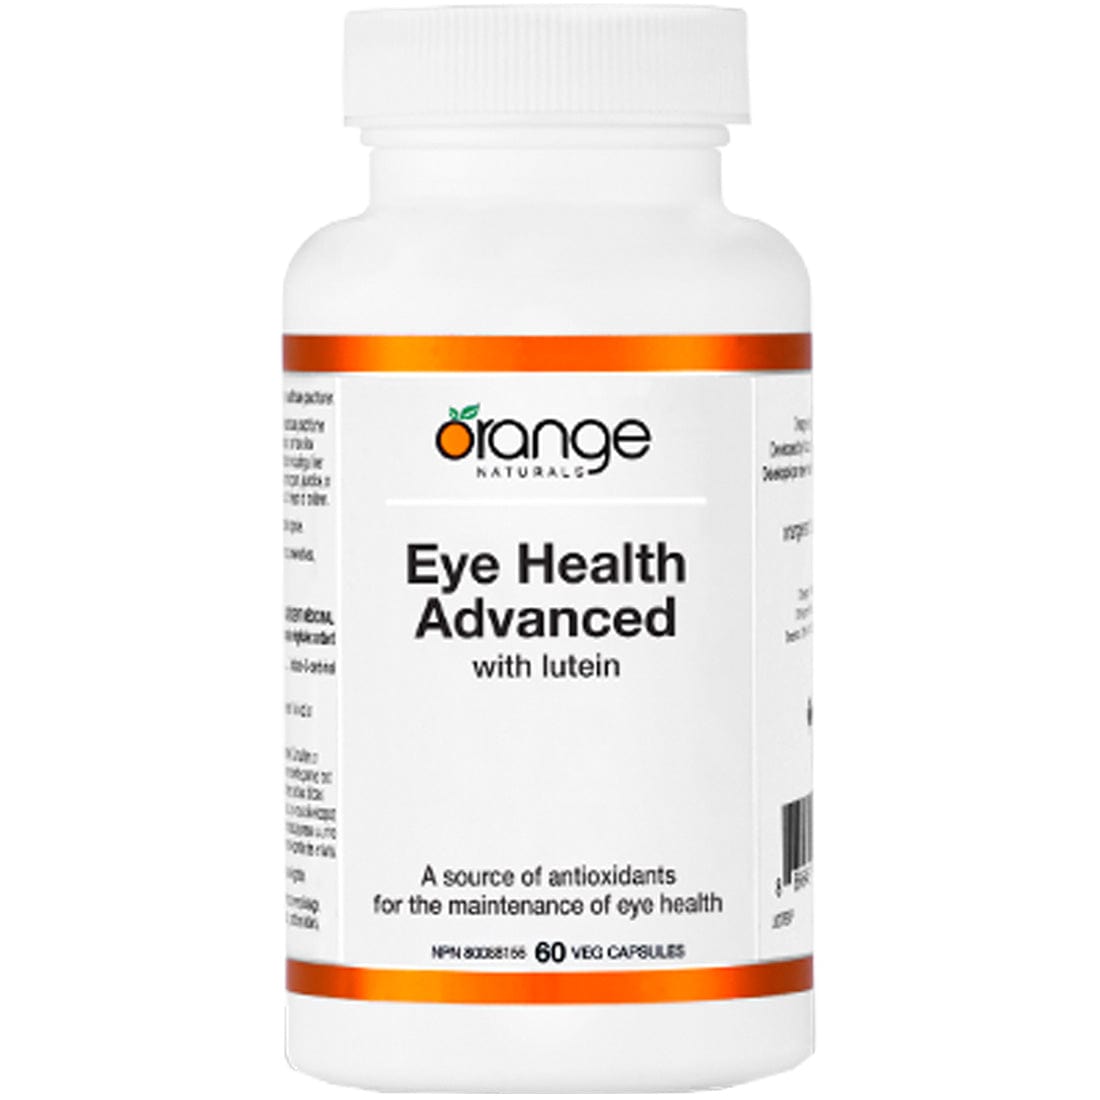 Orange Naturals Eye Health Advanced, 60 V-Capsules